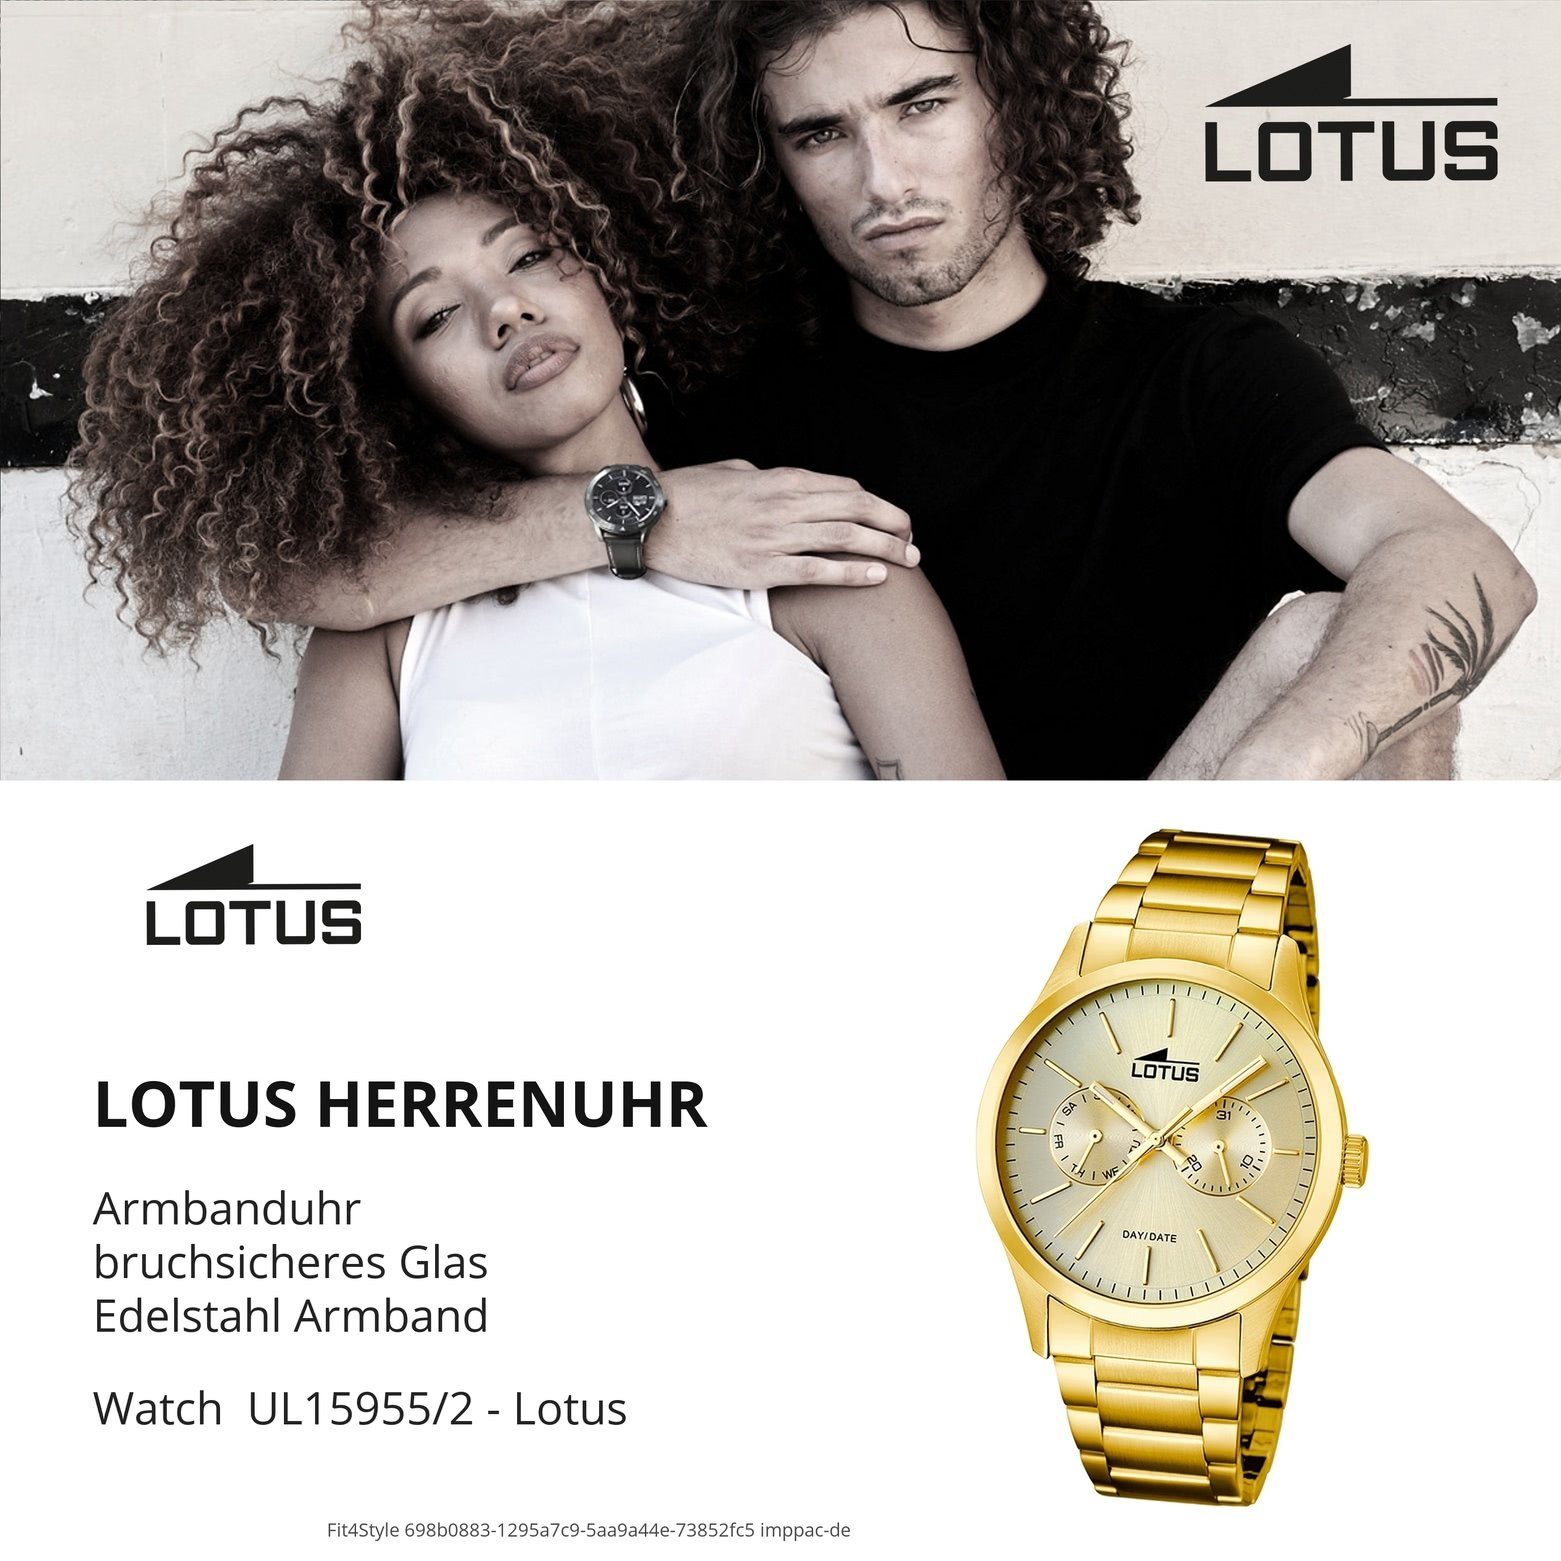 Edelstahl, Lotus Quarzuhr Armbanduhr L15955/2, Herren PVDarmband Herren Lotus Elegant gold Uhr rund,